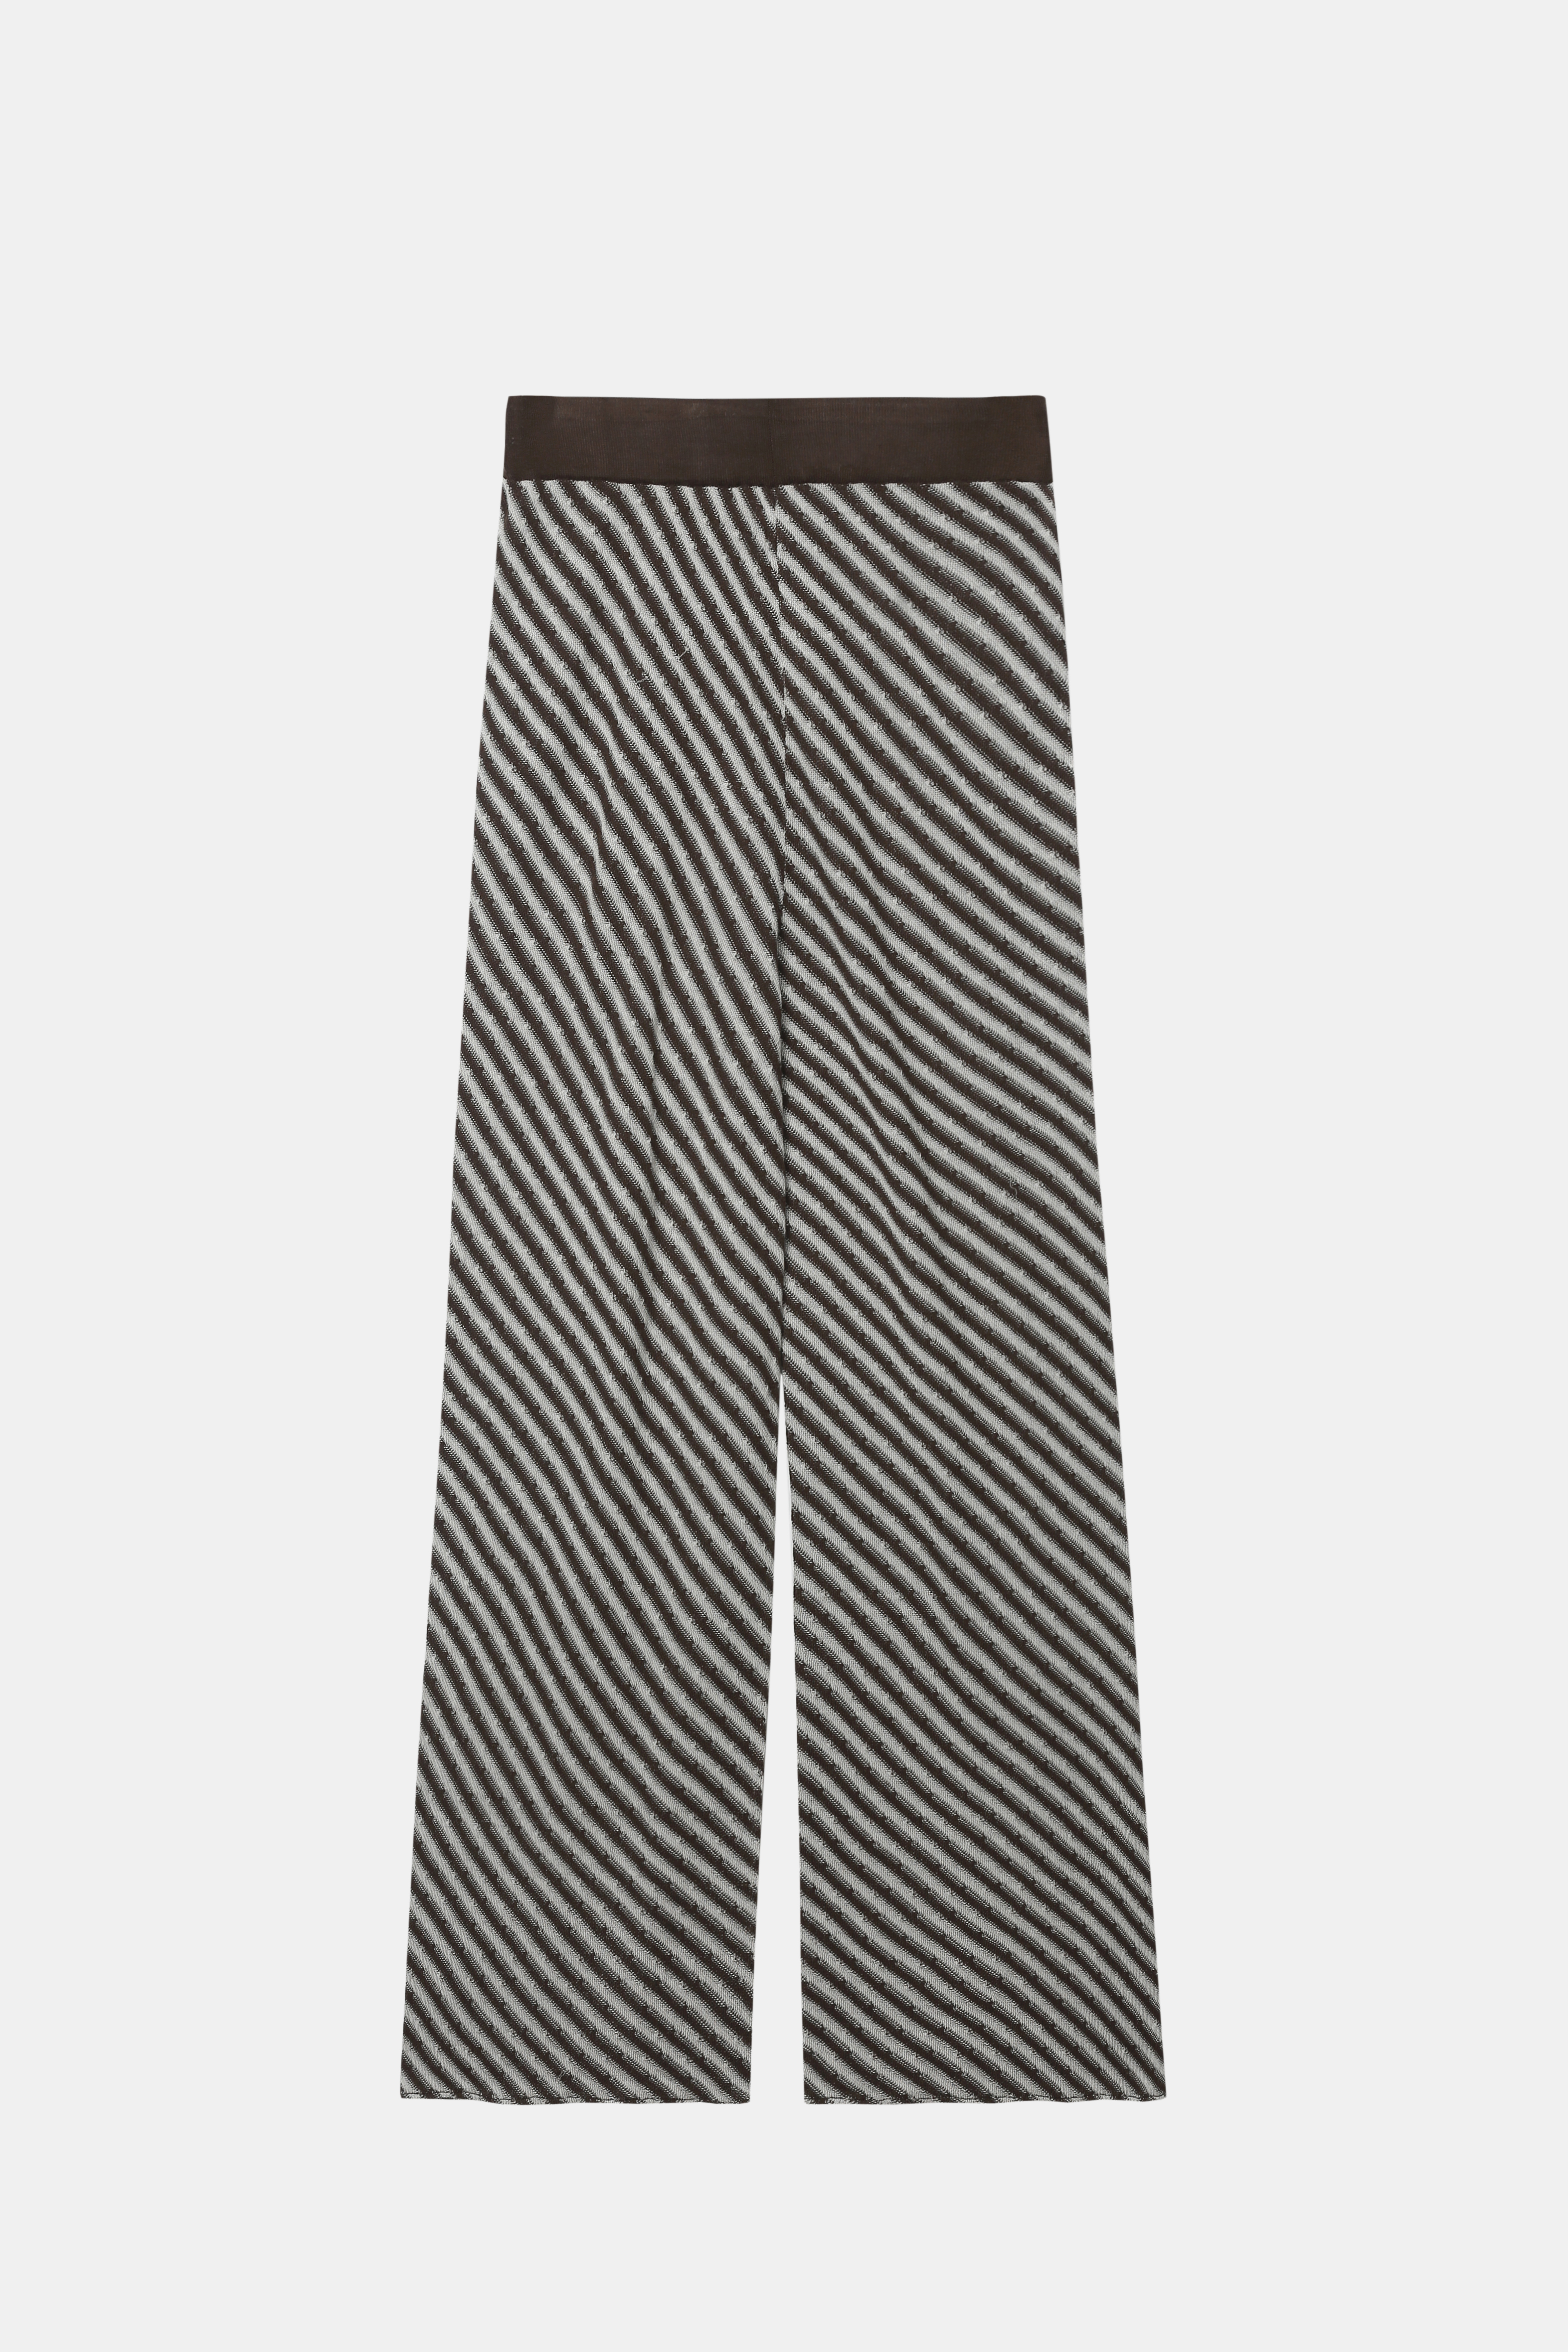 Pantalon grand à pattes à rayures en noir et blanc pour femmes avec lacets